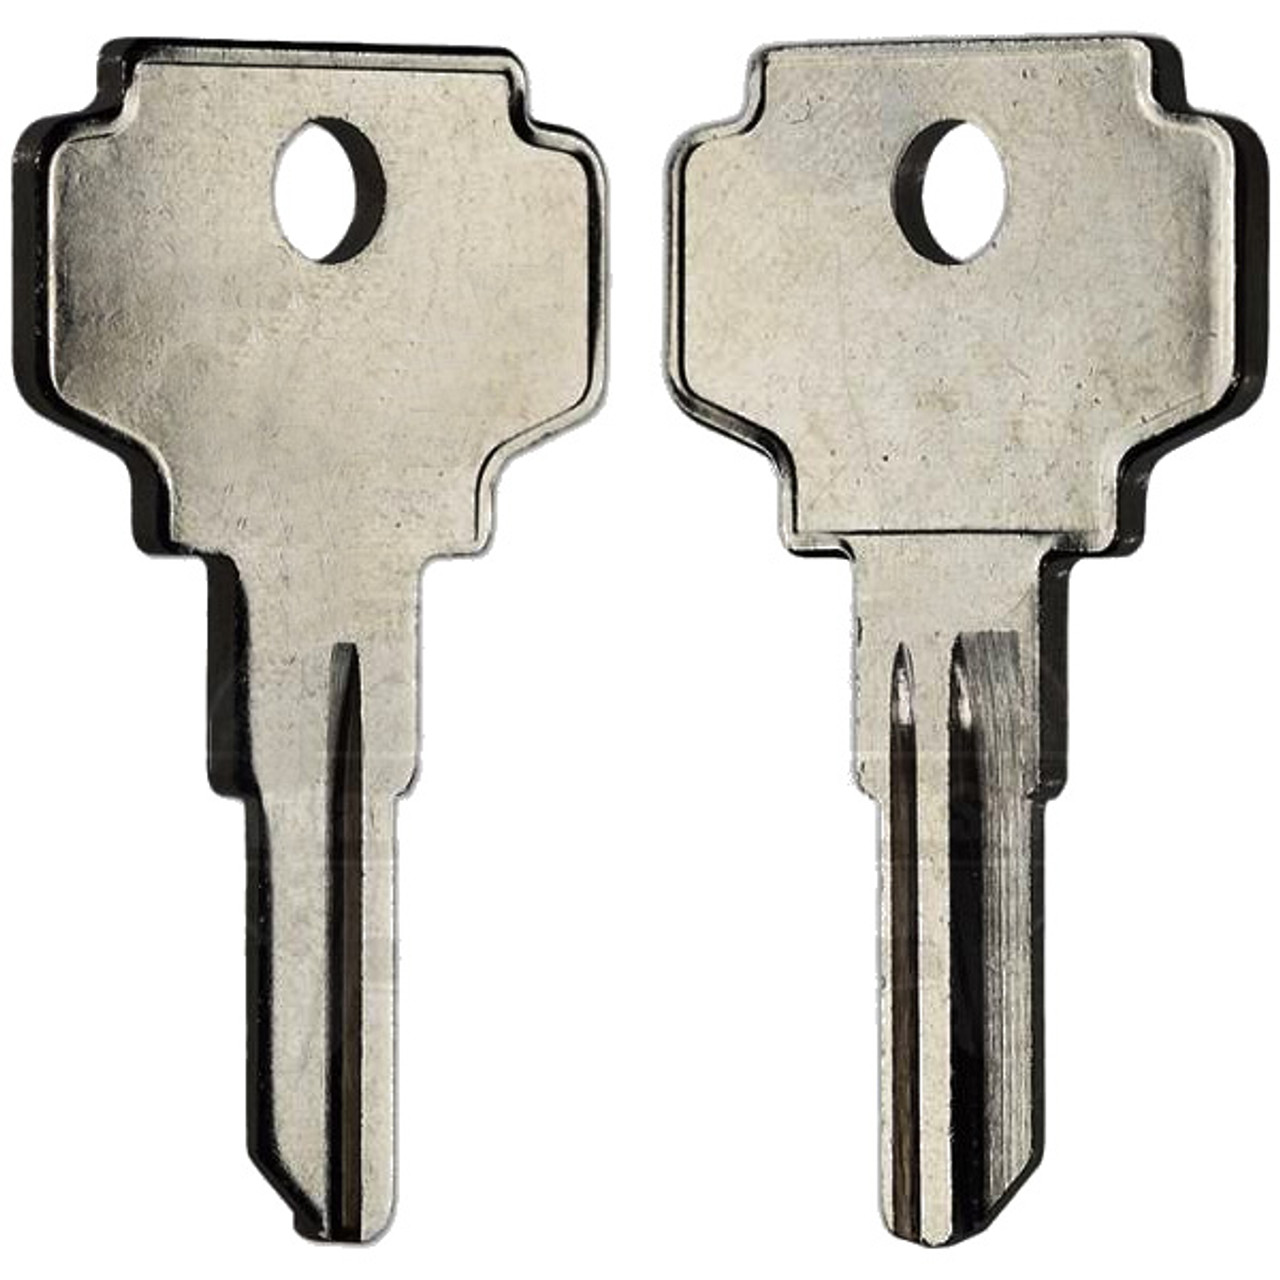 Keys - Old ROMs